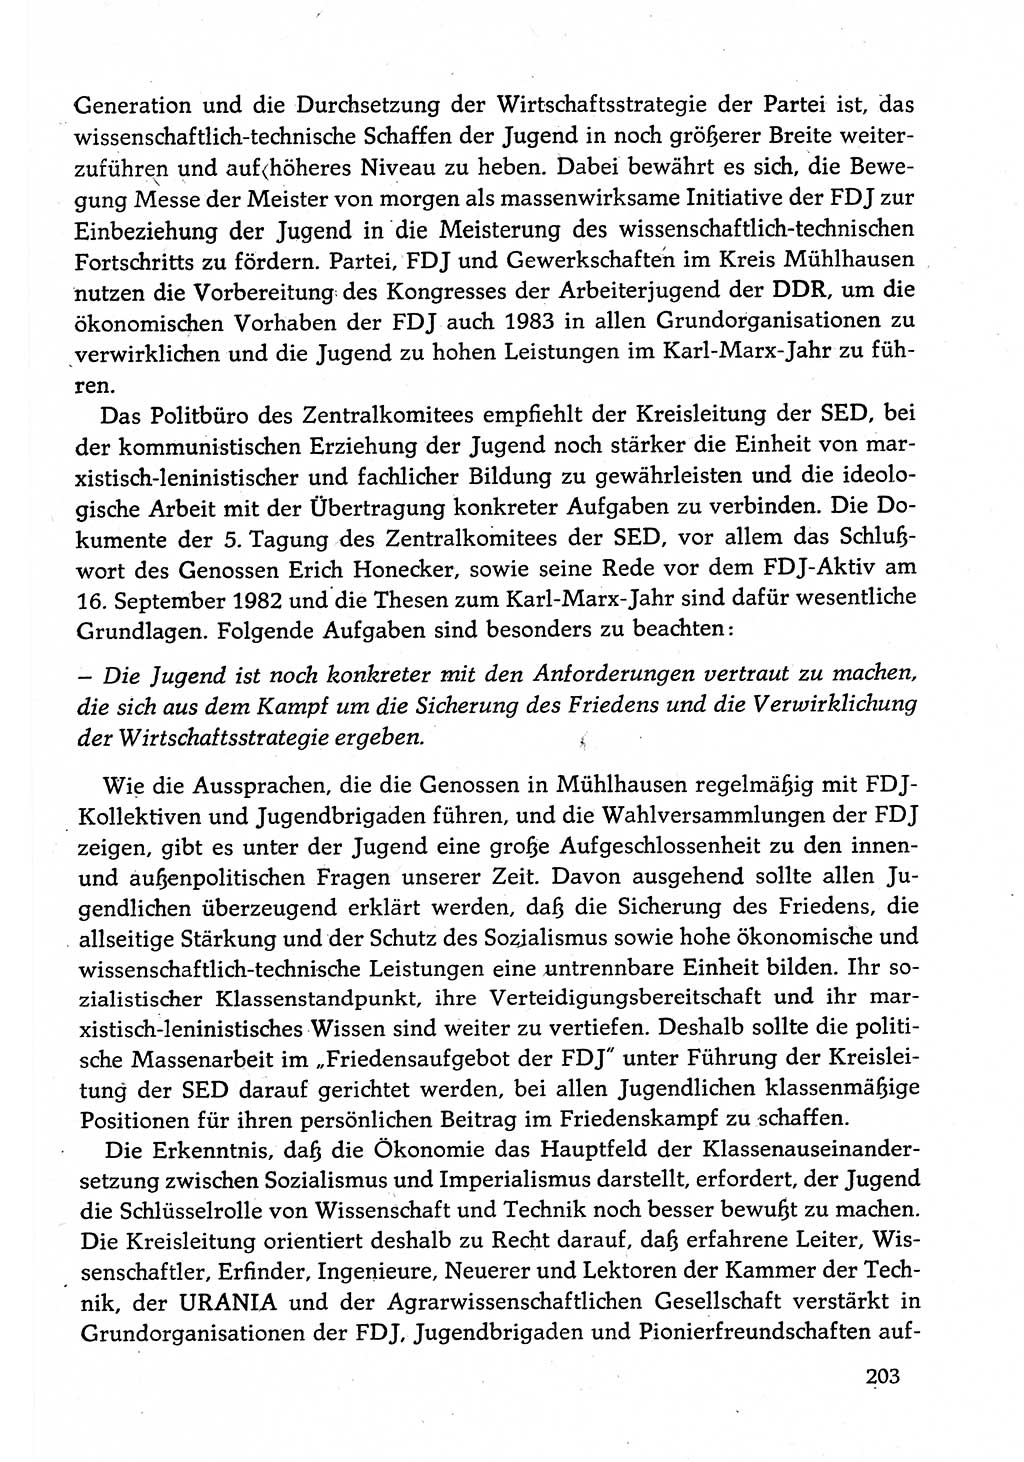 Dokumente der Sozialistischen Einheitspartei Deutschlands (SED) [Deutsche Demokratische Republik (DDR)] 1982-1983, Seite 203 (Dok. SED DDR 1982-1983, S. 203)